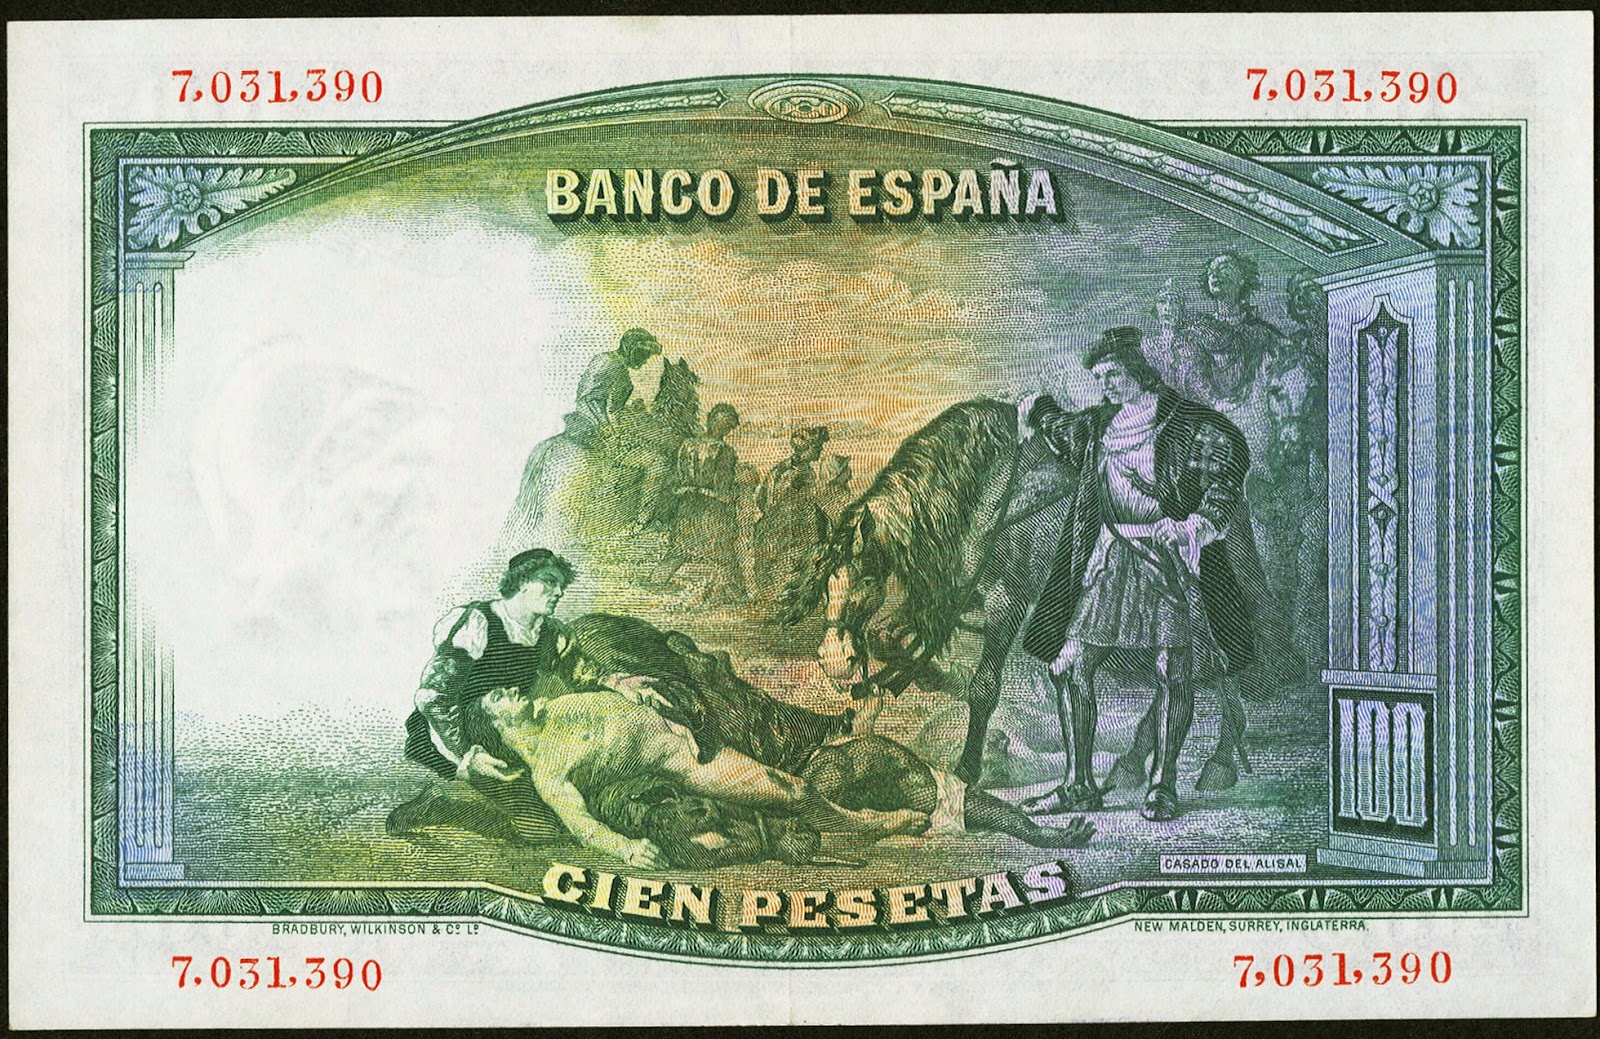 Spain money currency 100 Pesetas banknote 1931 Painting José Casado del Alisal